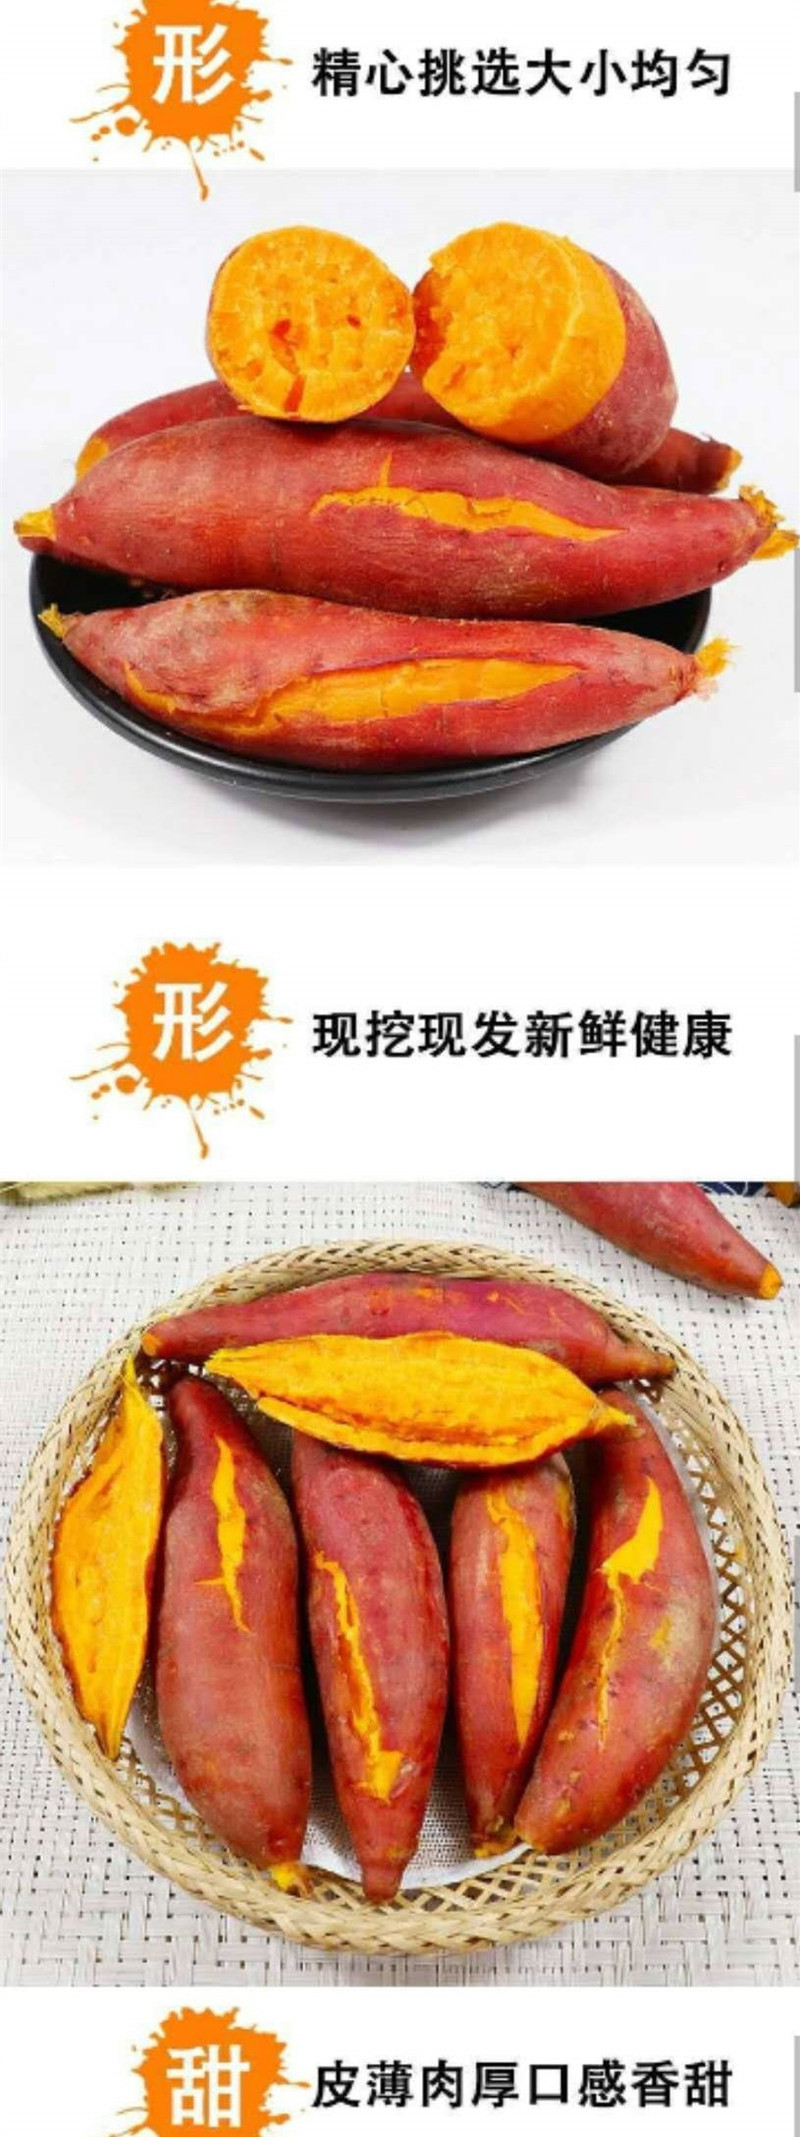 富元山 赣南红蜜薯2斤装